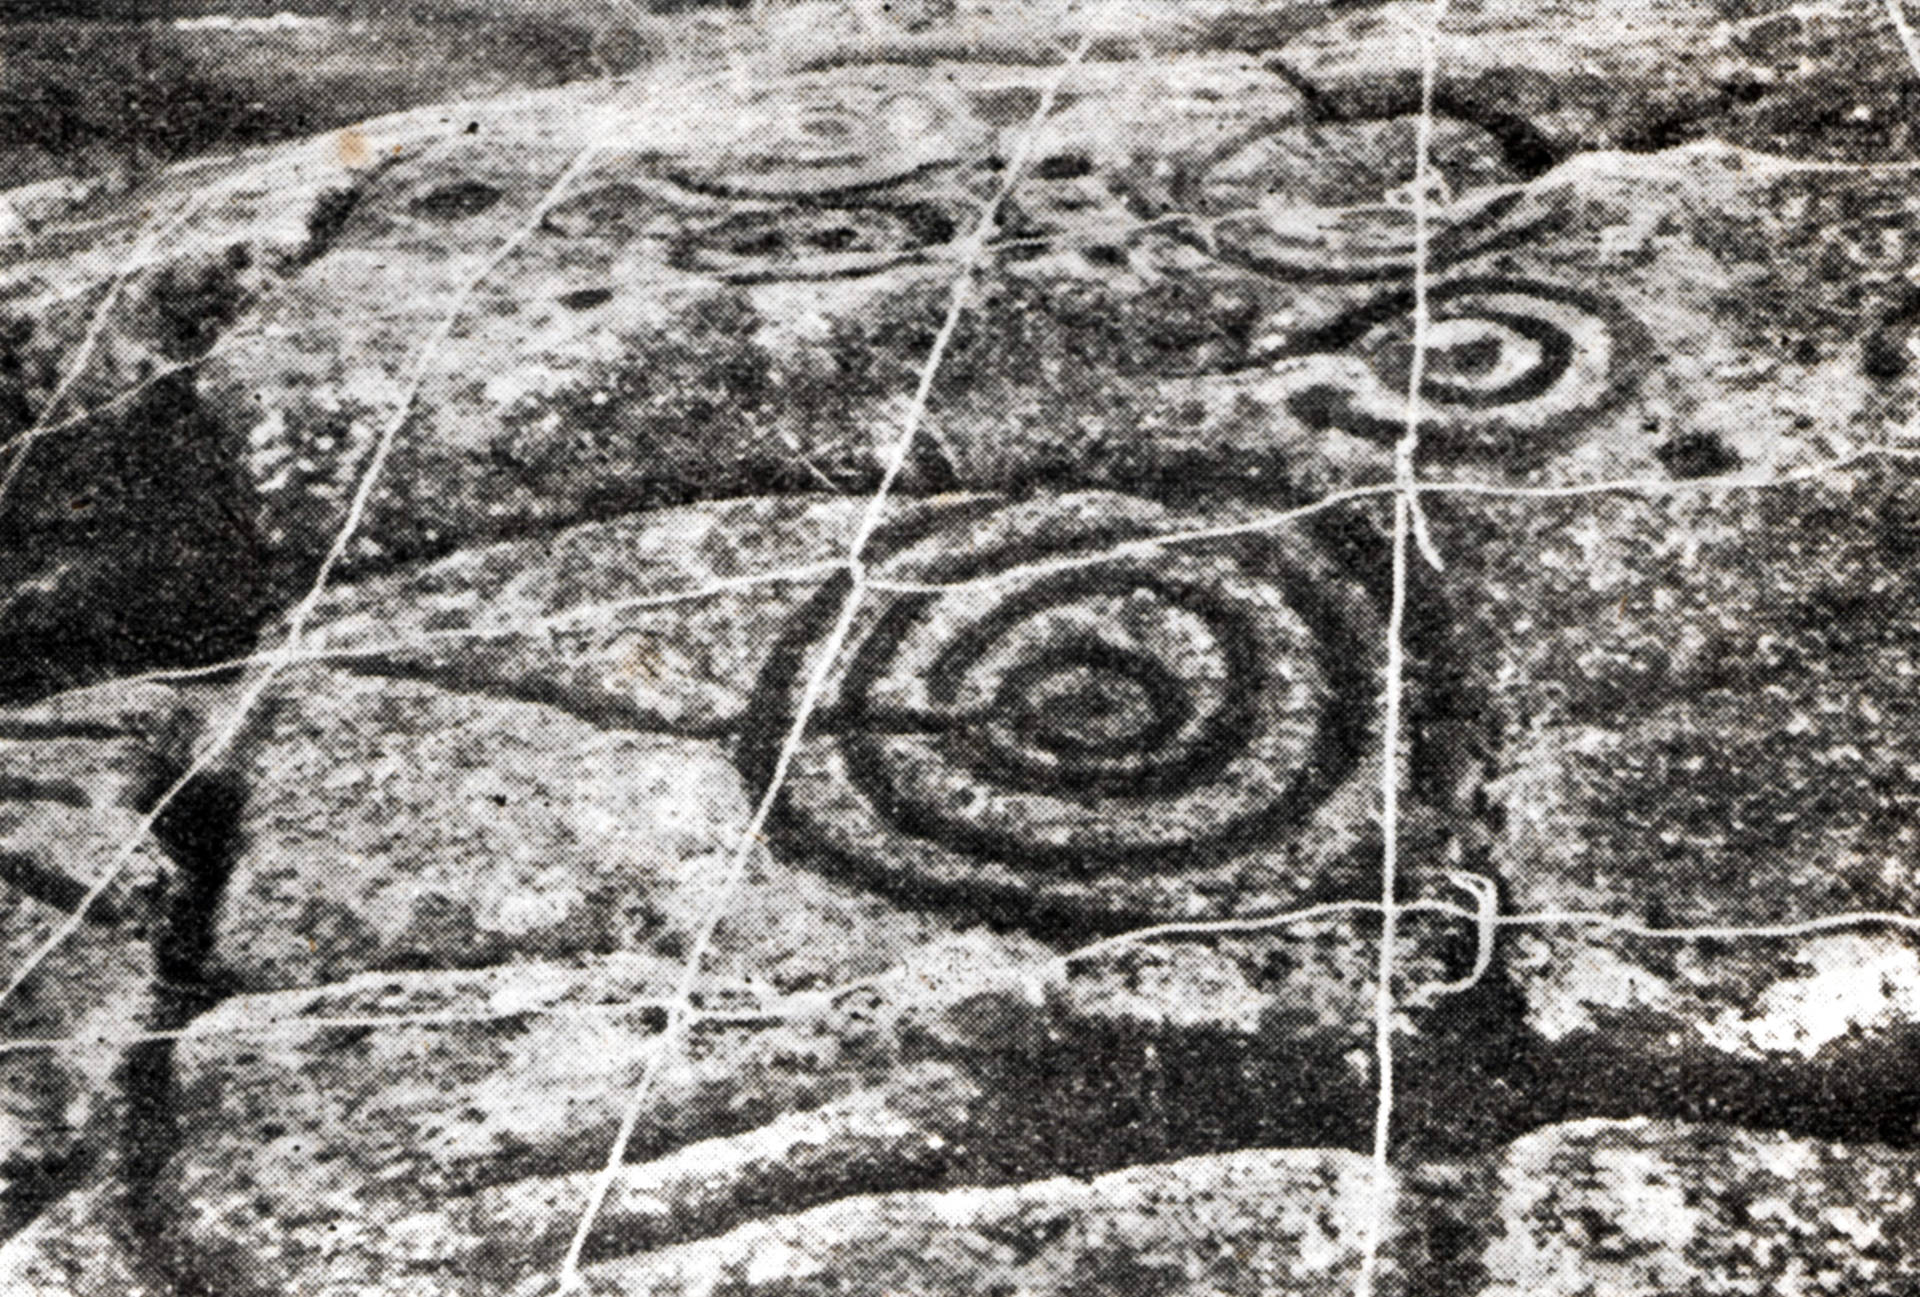 Registro del petroglifo de Oca.1951. ArchivoNúñez – Sobrino. Fotografías de Ramón Sobrino Lorenzo - Ruza (1939-1958). Digitalización Colectivo A Rula.